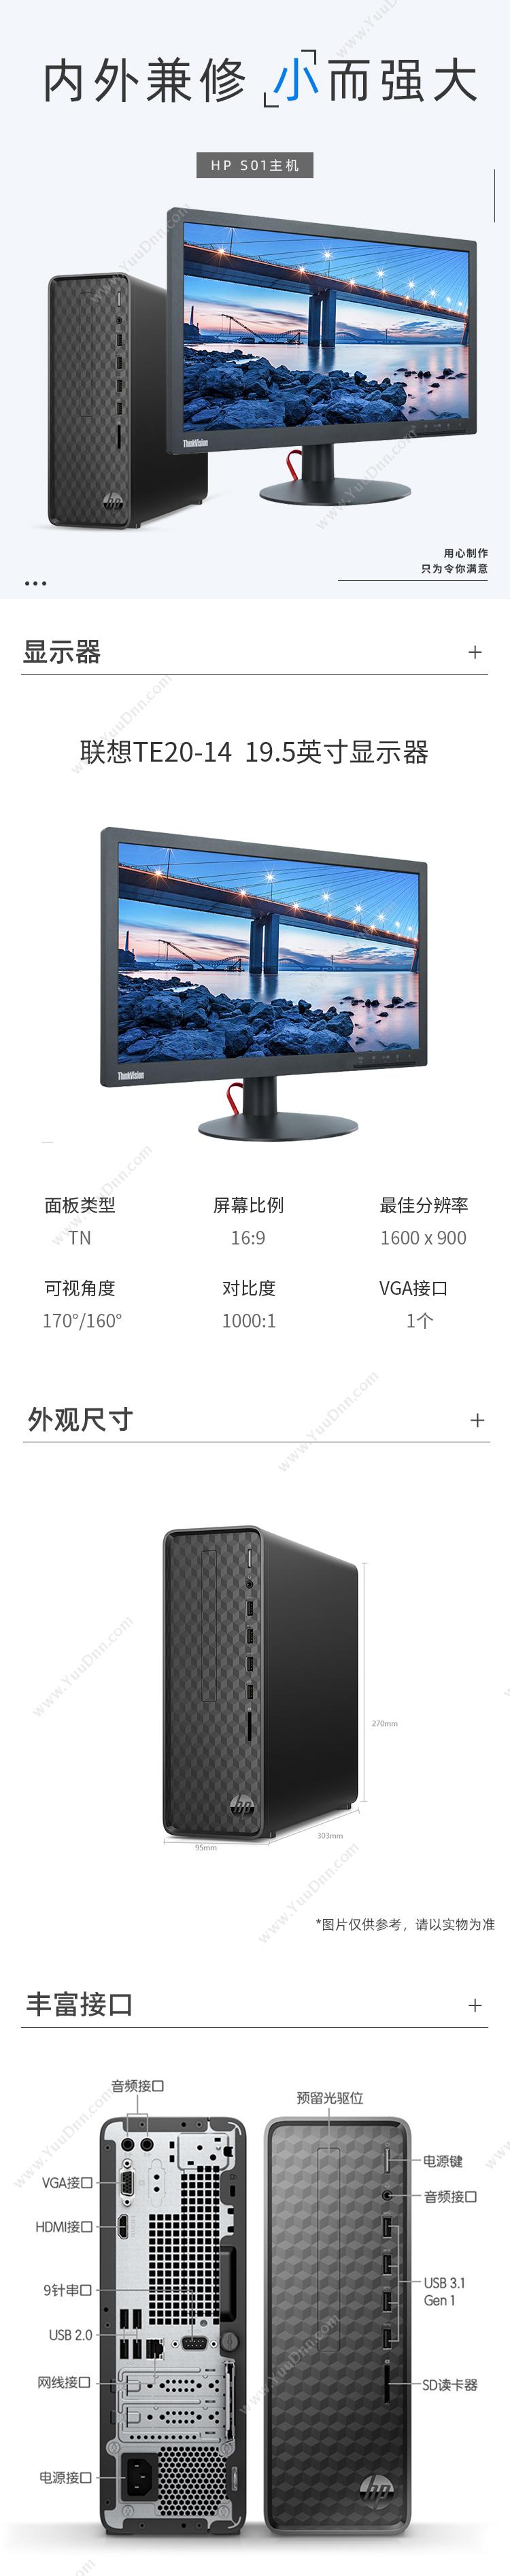 惠普 HP S01 台式机 (G5905/4G/256G SSD/核显/TE20-14 19.5英寸/Win10 家庭版) 台式机